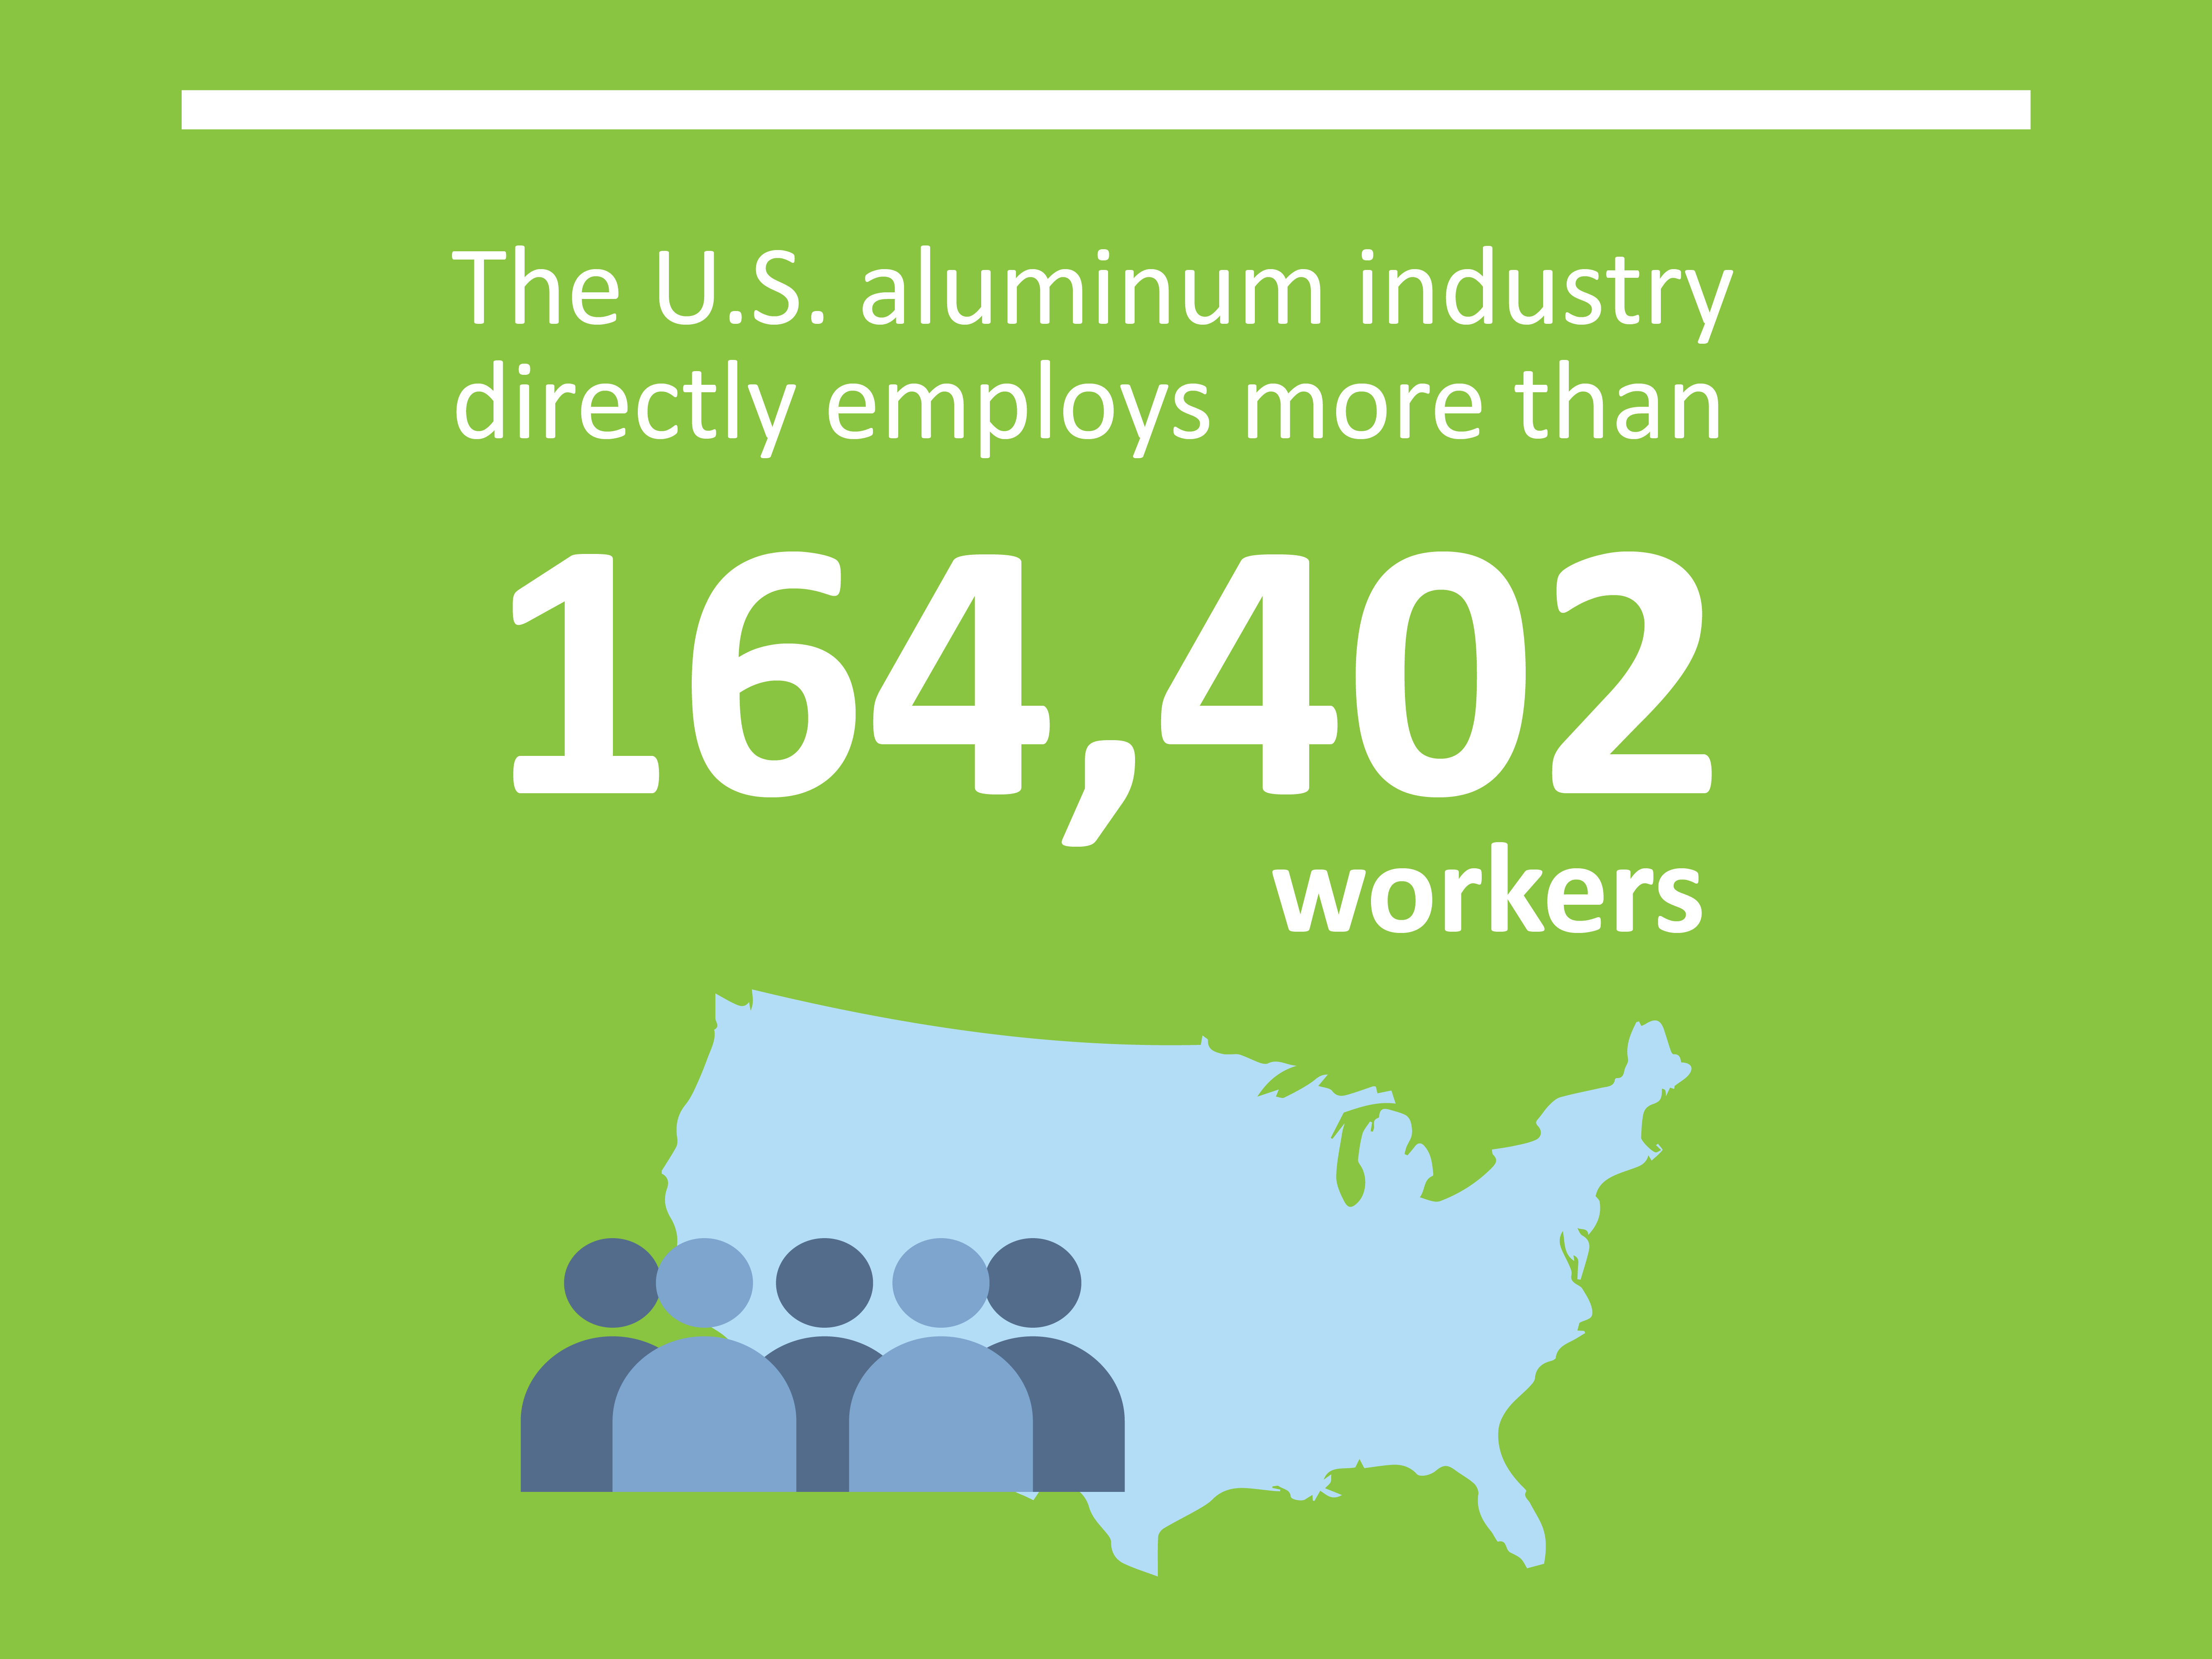 图形显示美国铝行业直接雇用超过164 402名工人